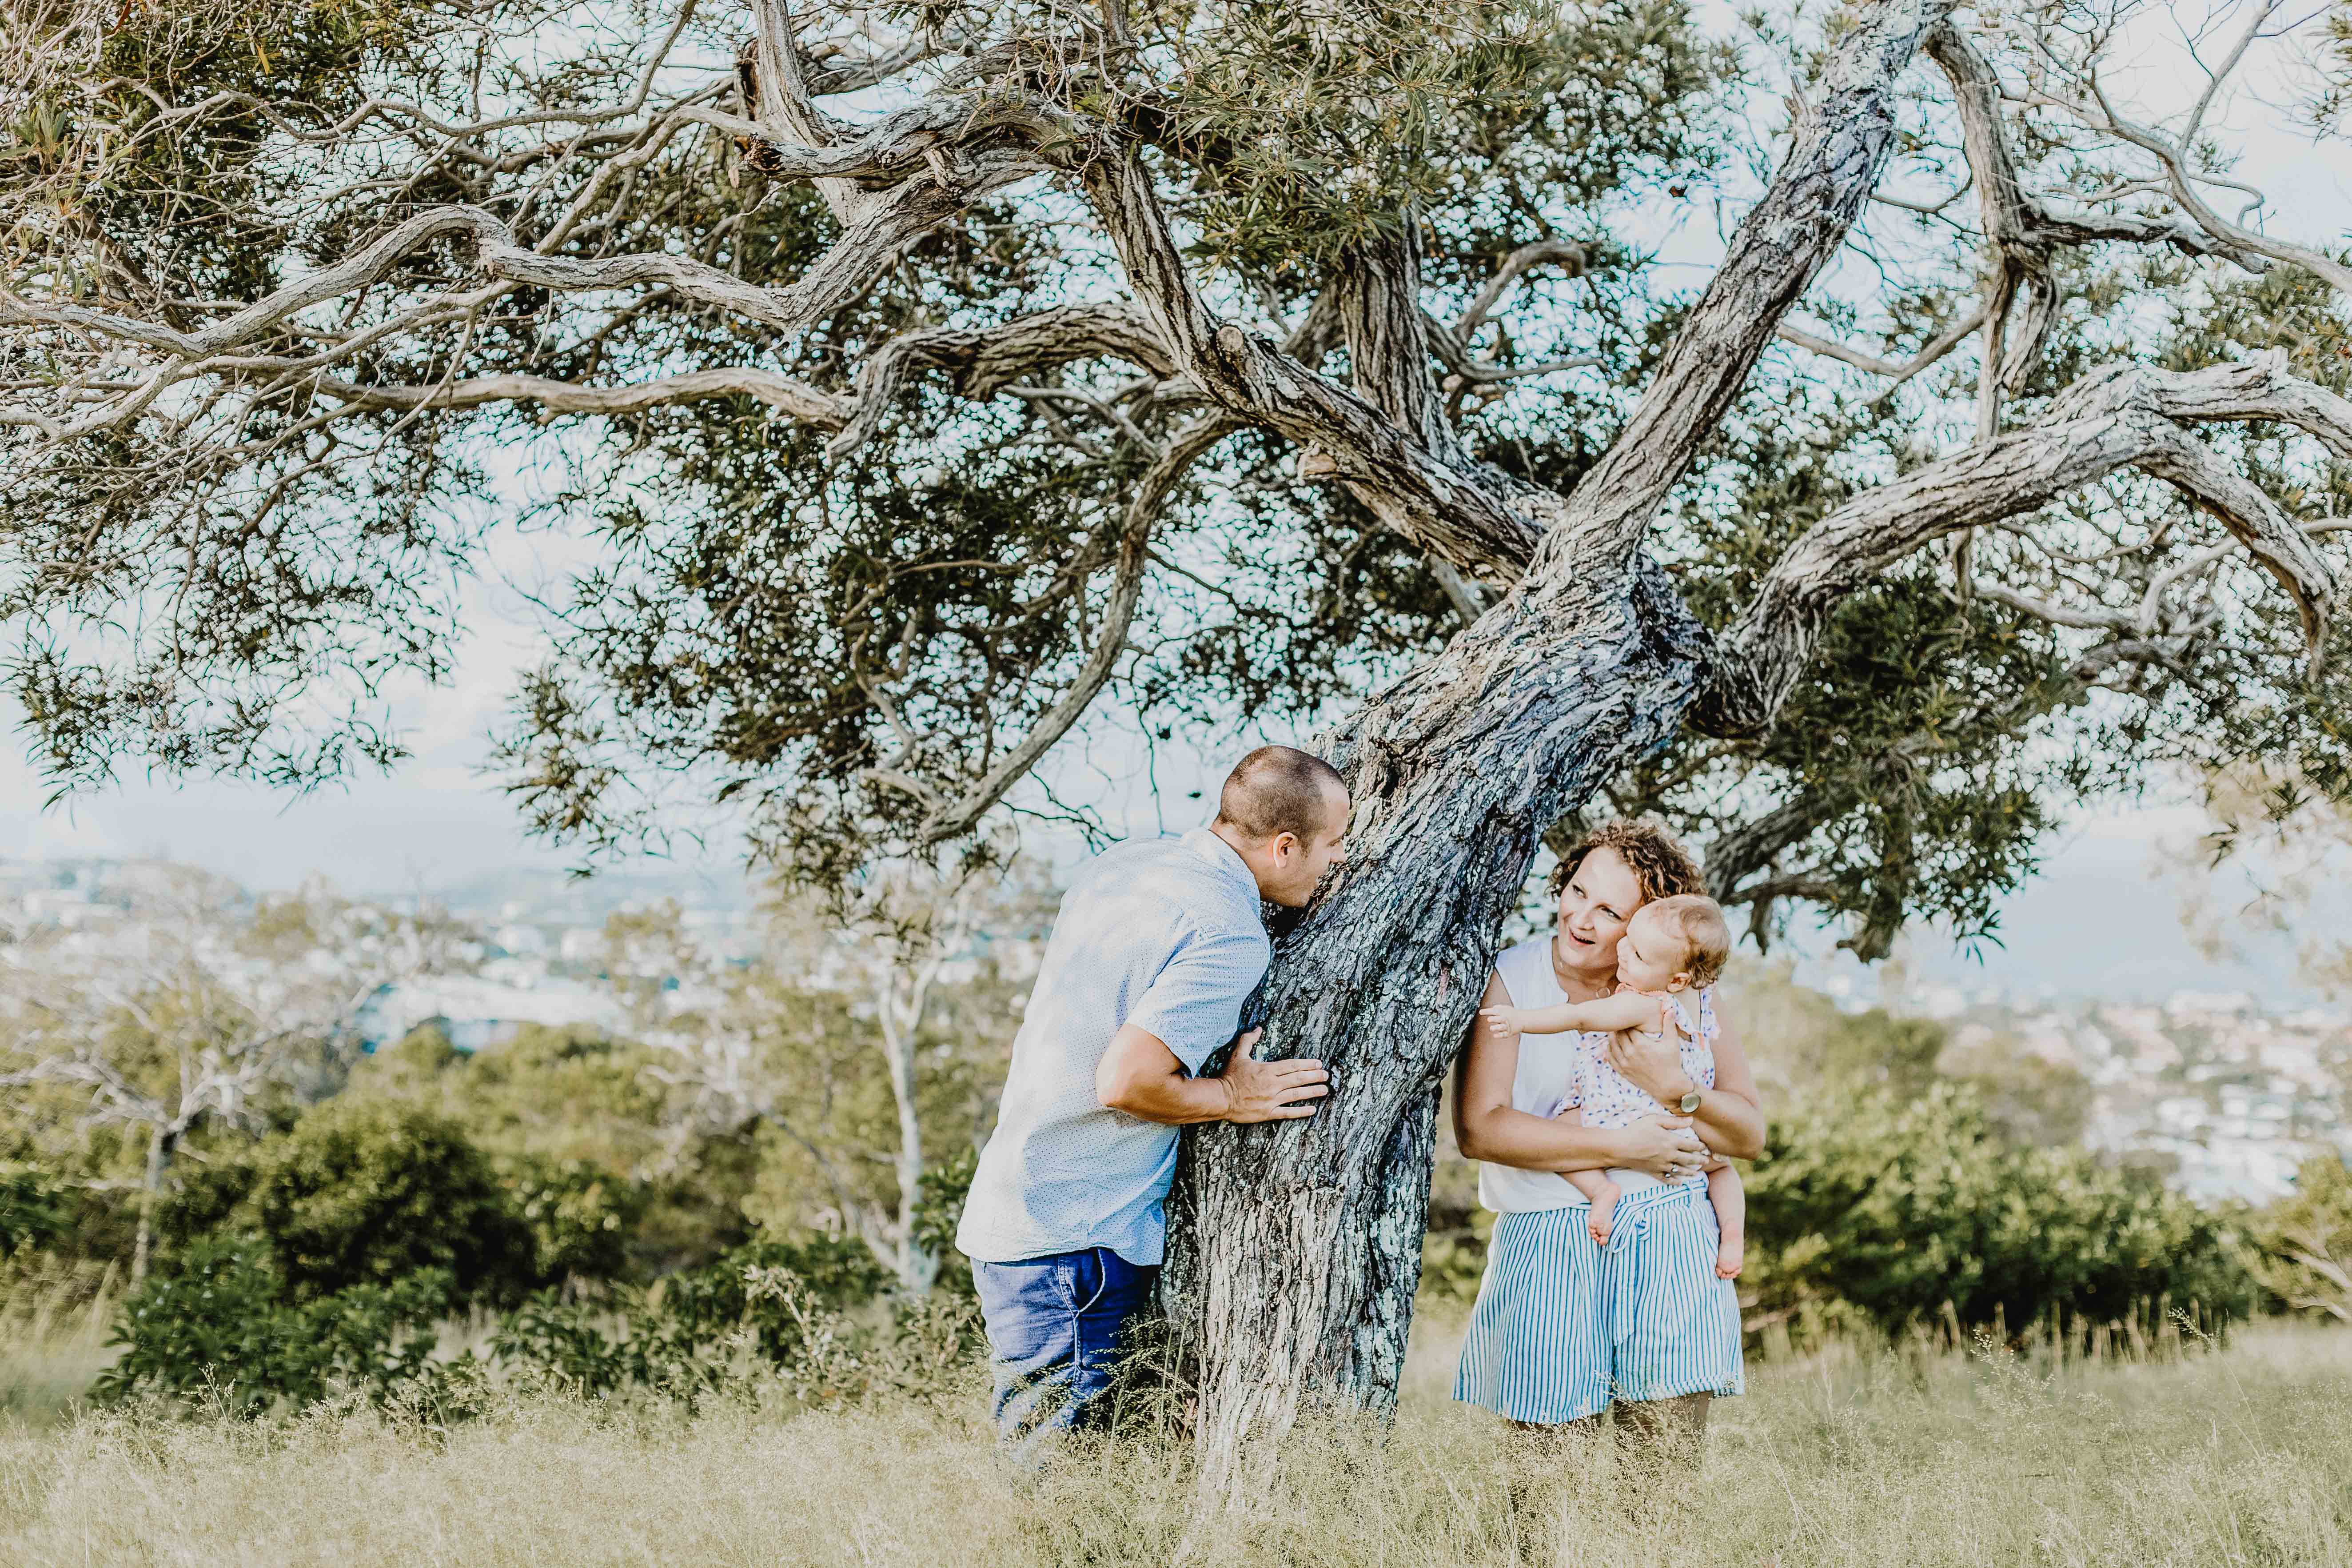 séance photo famille lifestyle en extérieur. les parents portent bébé près d'un arbre